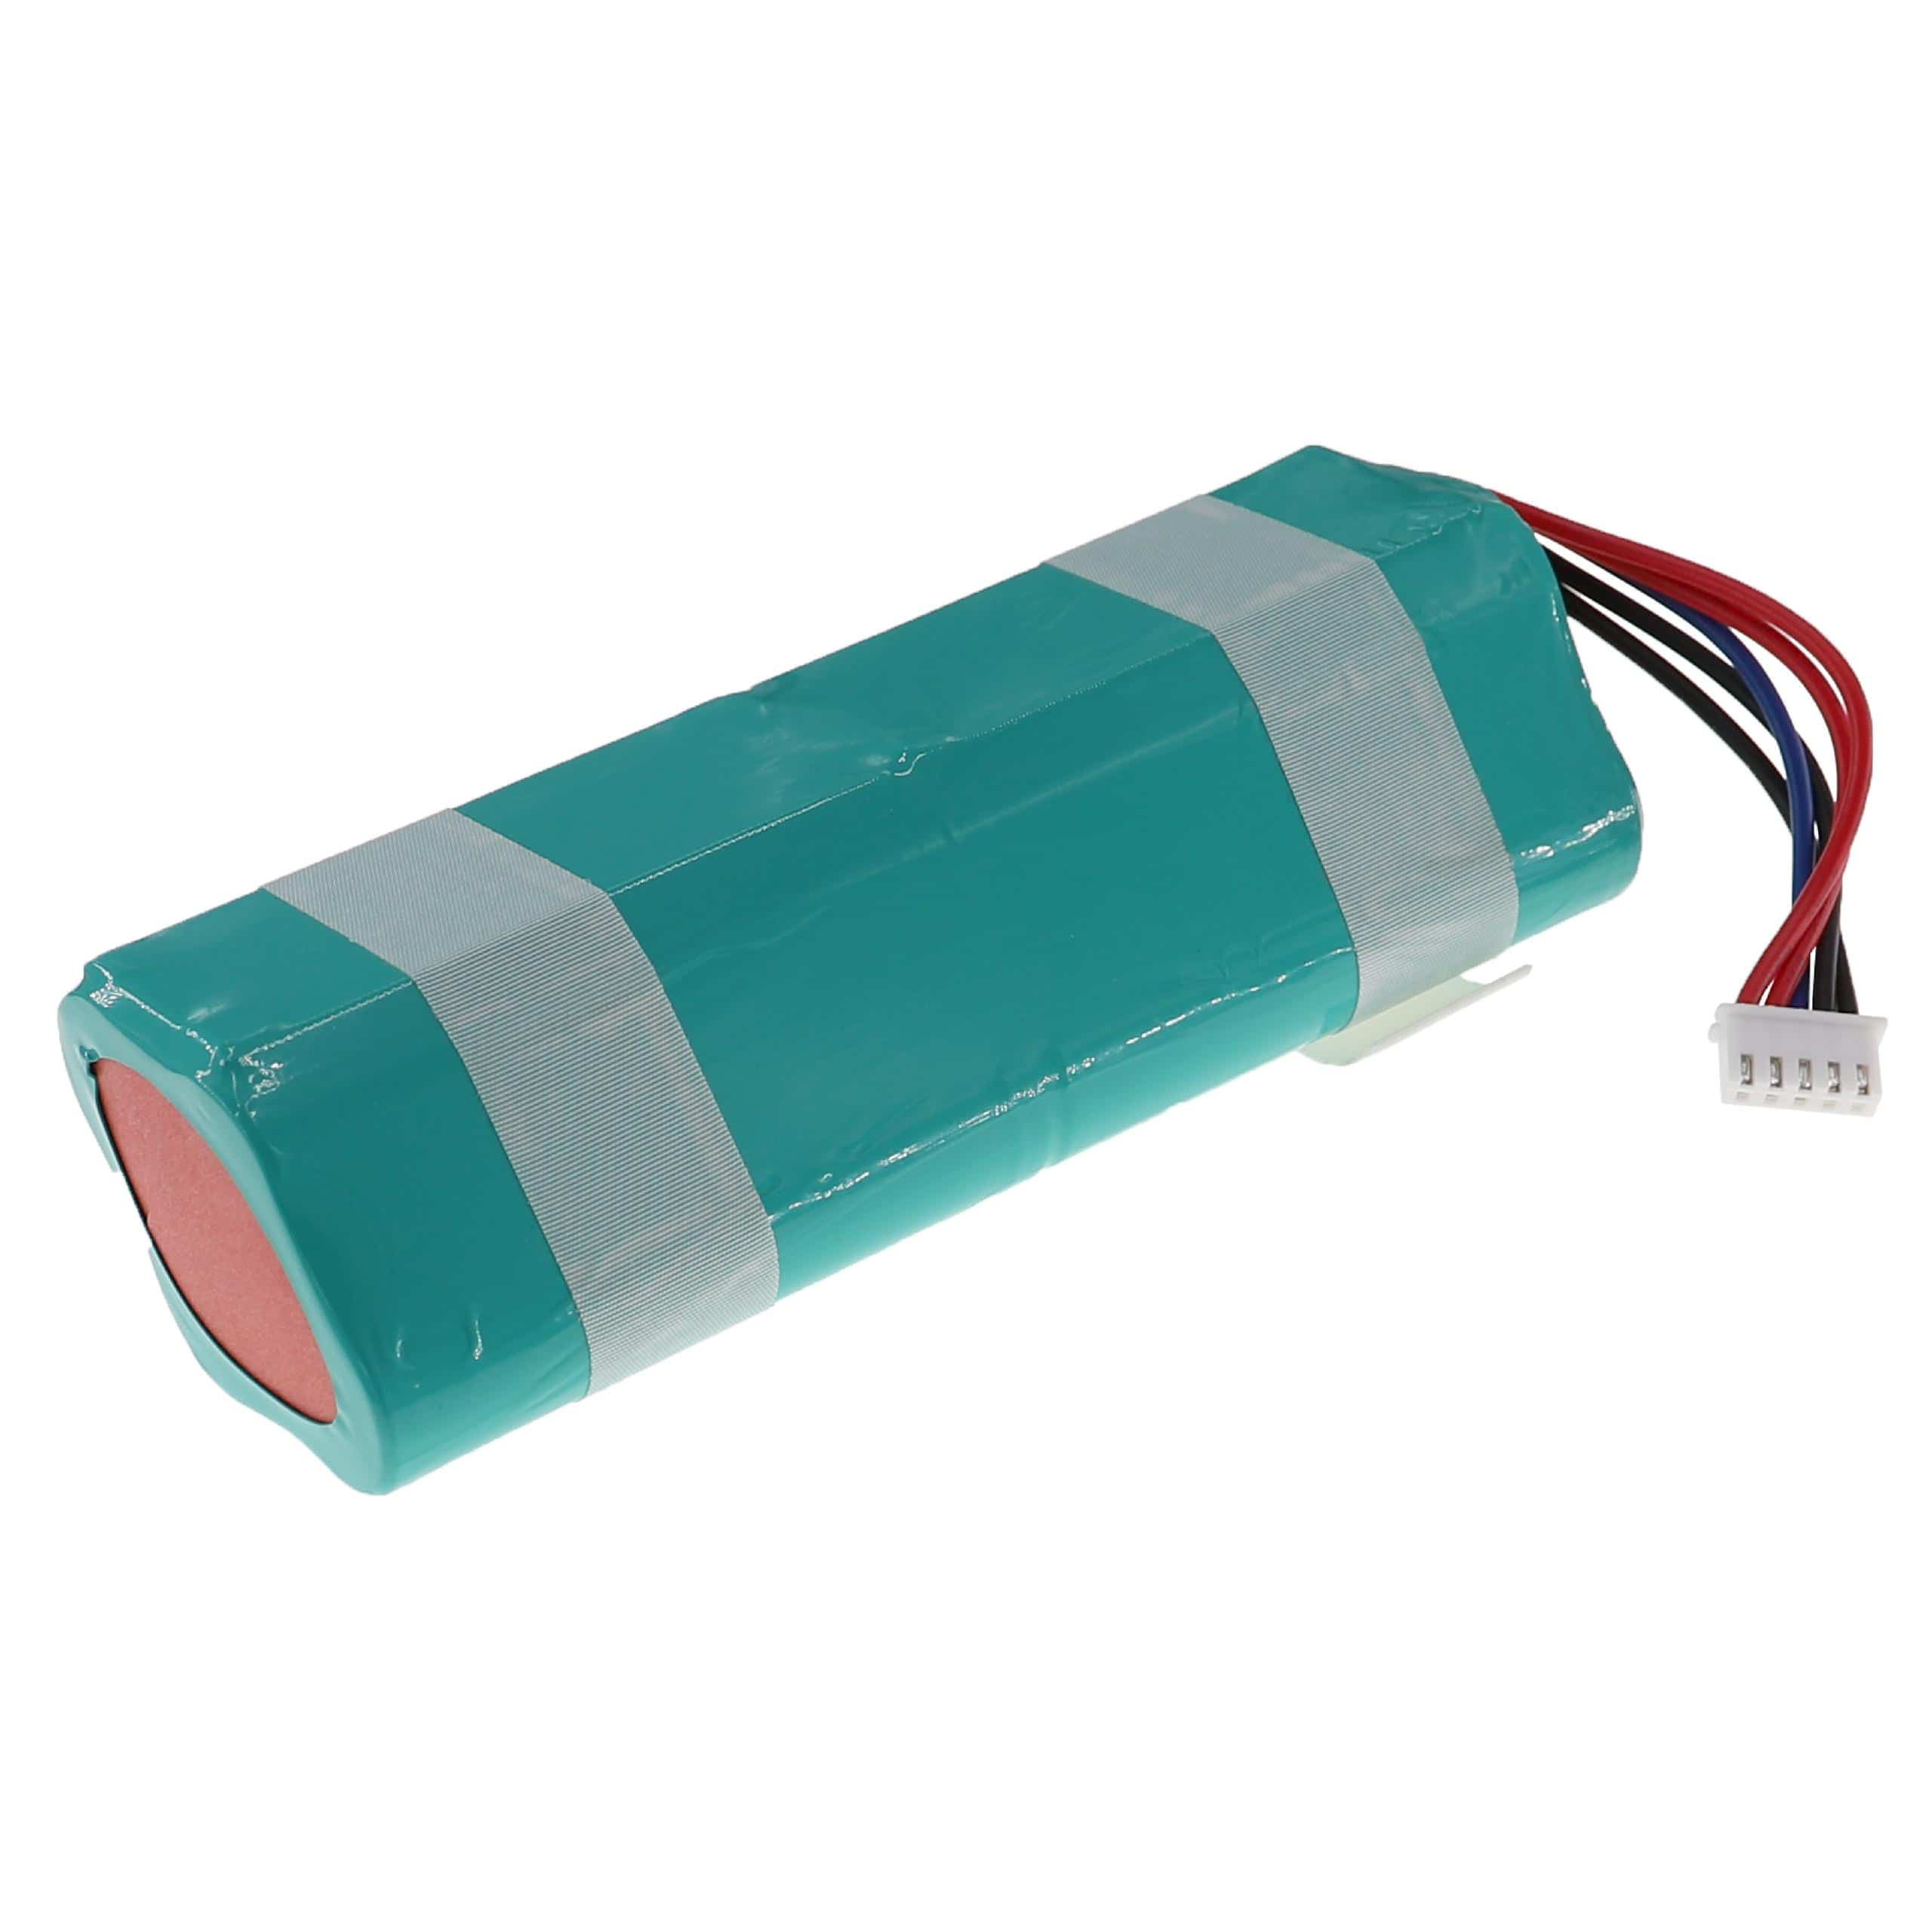 Batterie remplace Ecovacs 201-1913-4200, 201-1913-4201 pour robot aspirateur - 5200mAh 14,4V Li-ion, turquoise